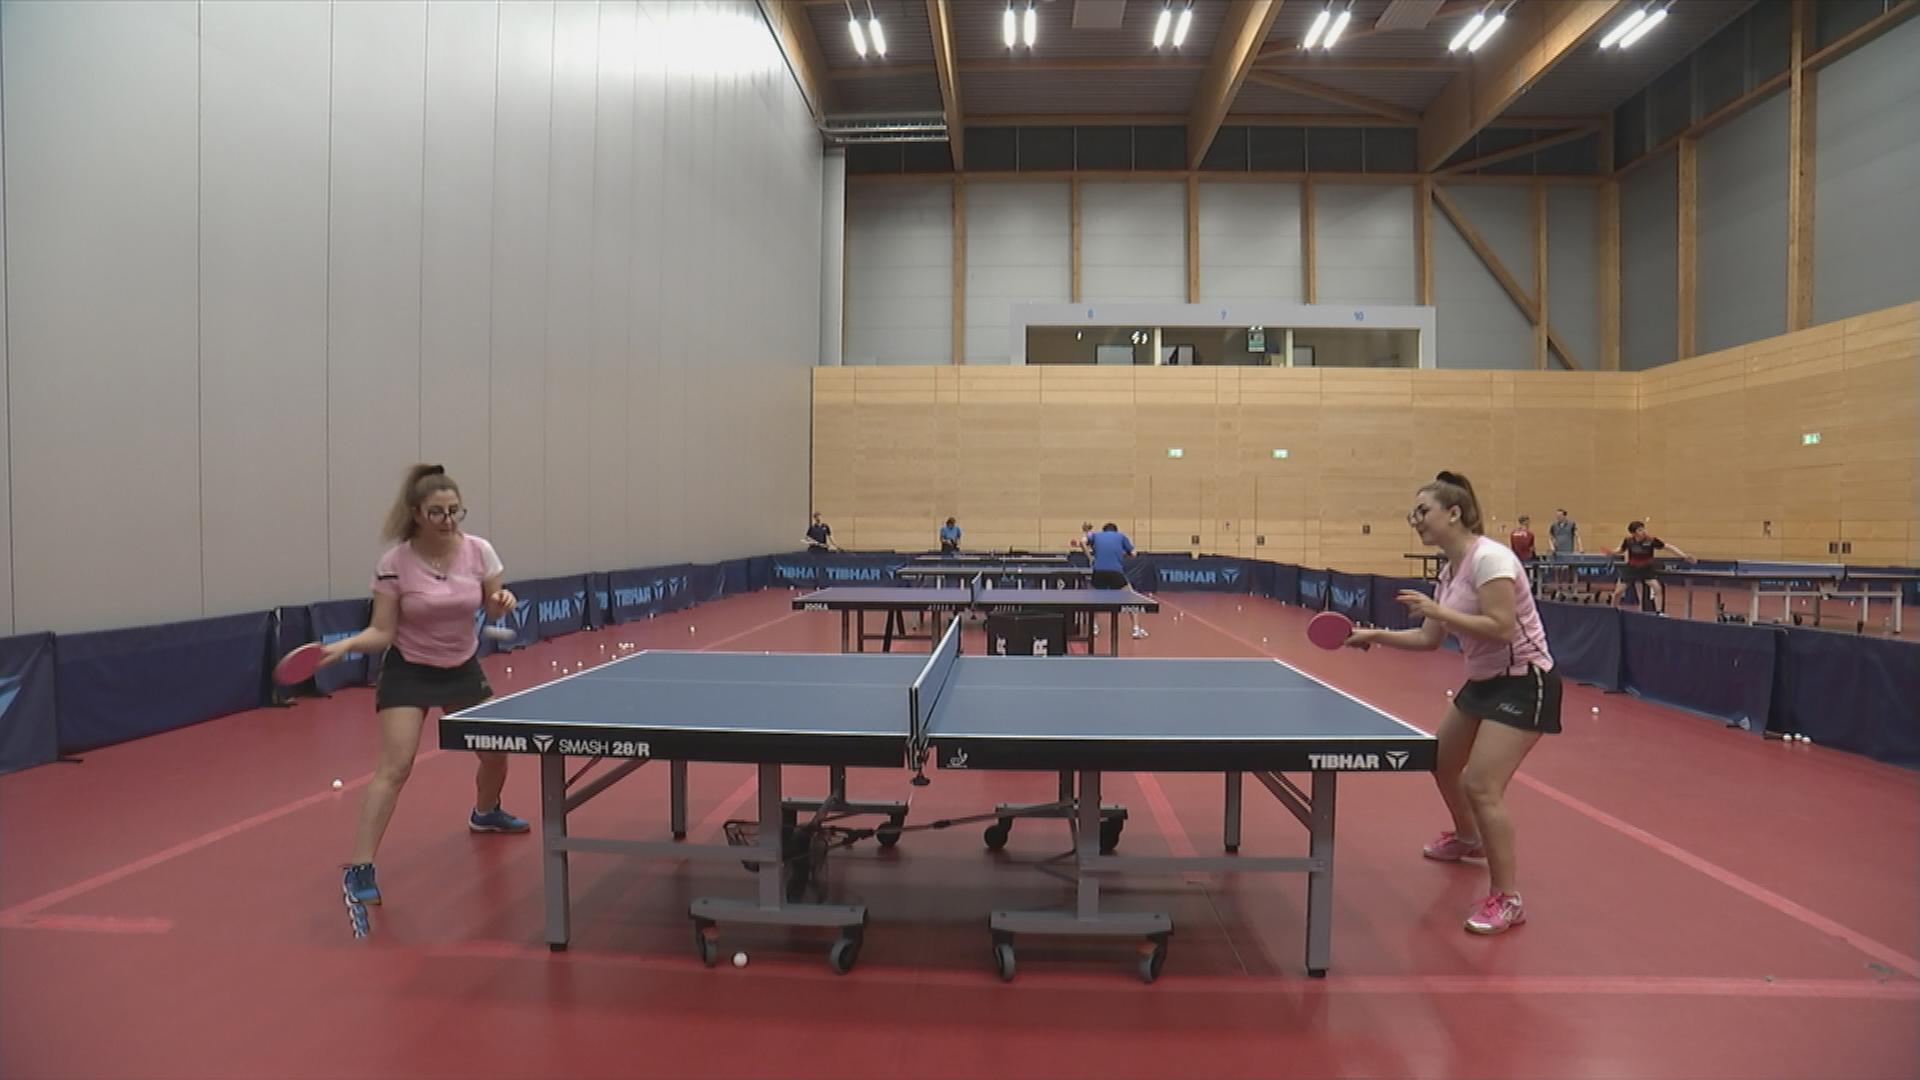 Die Zwillinge Ninar und Samar spielen Tischtennis gegeneinander in einer Halle